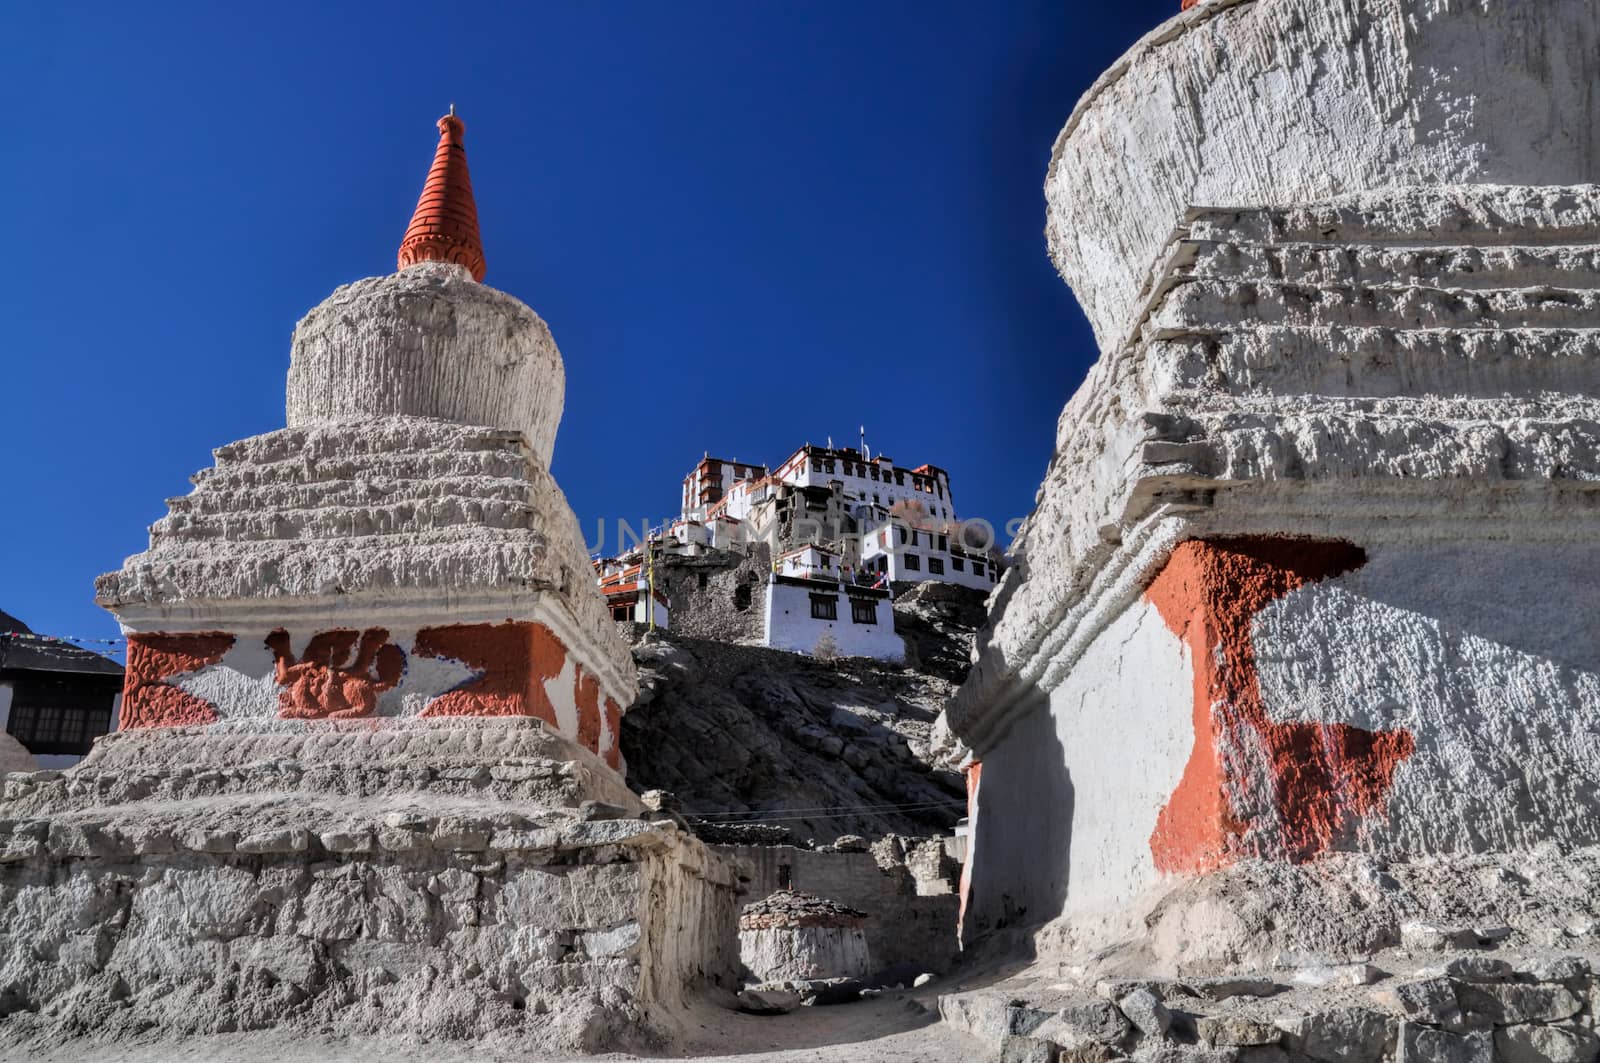 Sunlit stone monuments of Chemrey monastery in Ladakh  